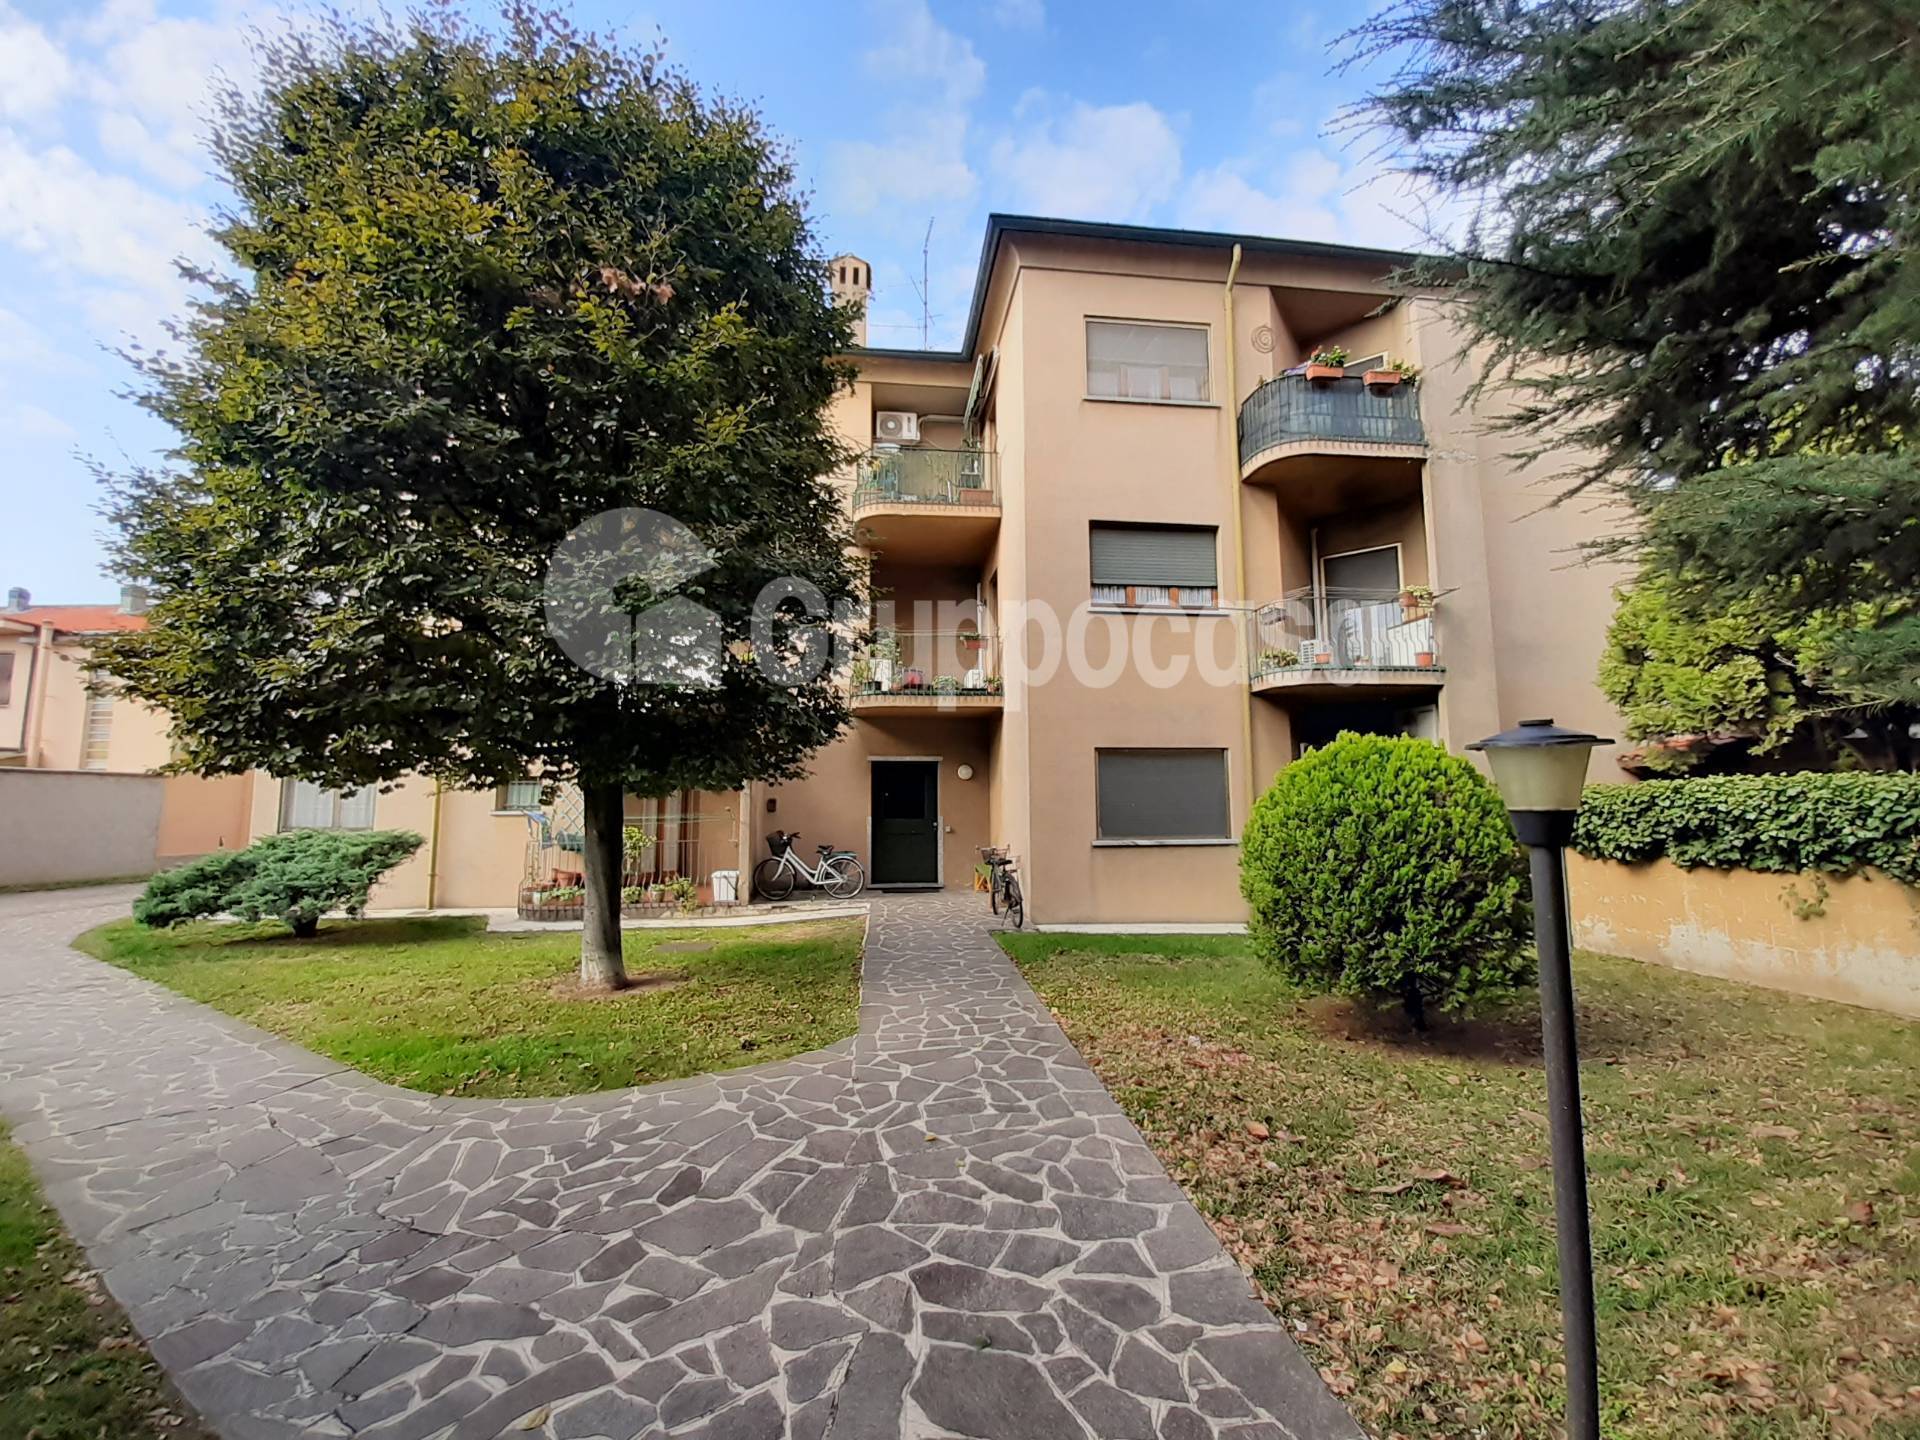 Appartamento in vendita a Marcallo con Casone, 3 locali, zona allo, prezzo € 108.000 | PortaleAgenzieImmobiliari.it